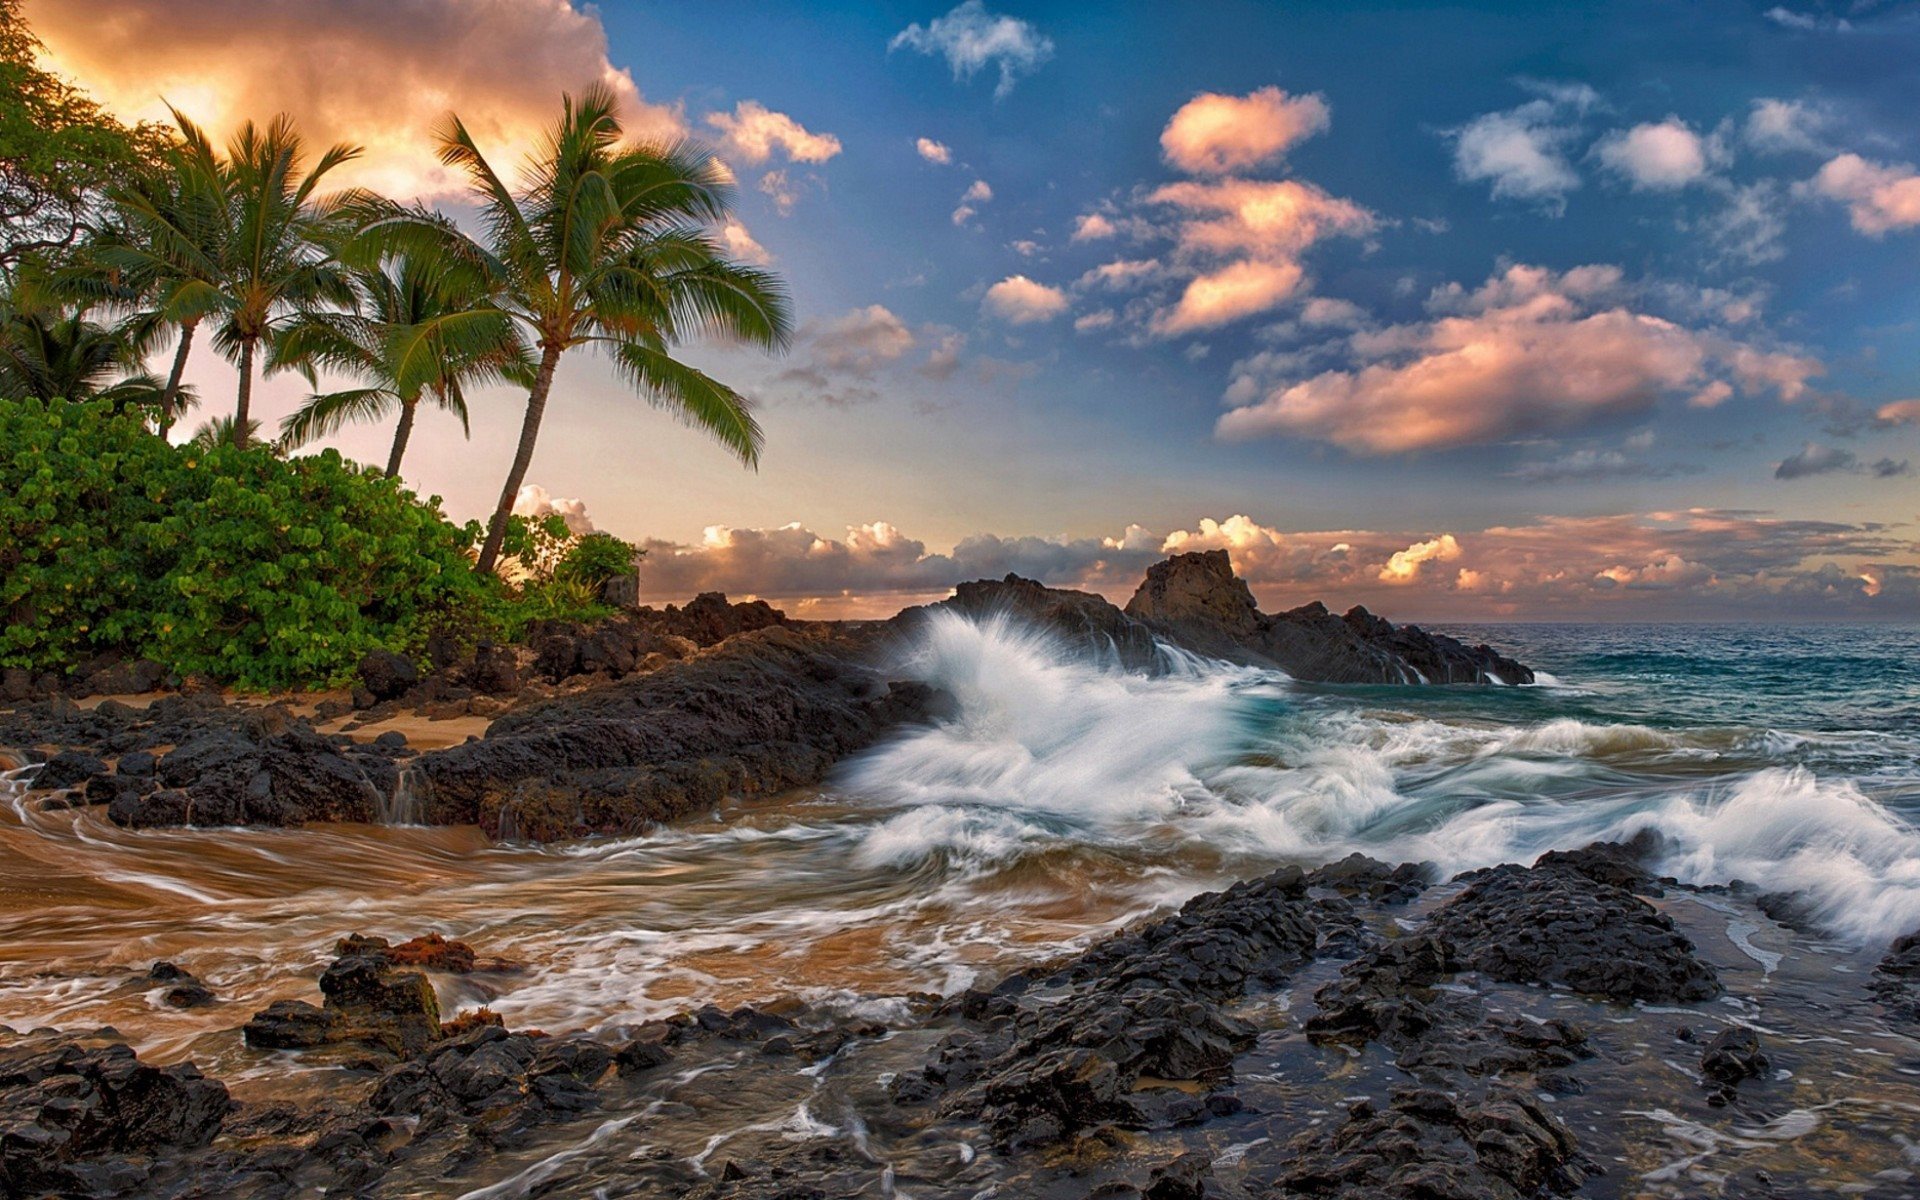 ダウンロード画像 熱帯海岸 海洋の 海岸 米国 ハワイ 熱帯地域 島 トロピカルビーチ マウイ 画面の解像度 19x10 壁紙デスクトップ上